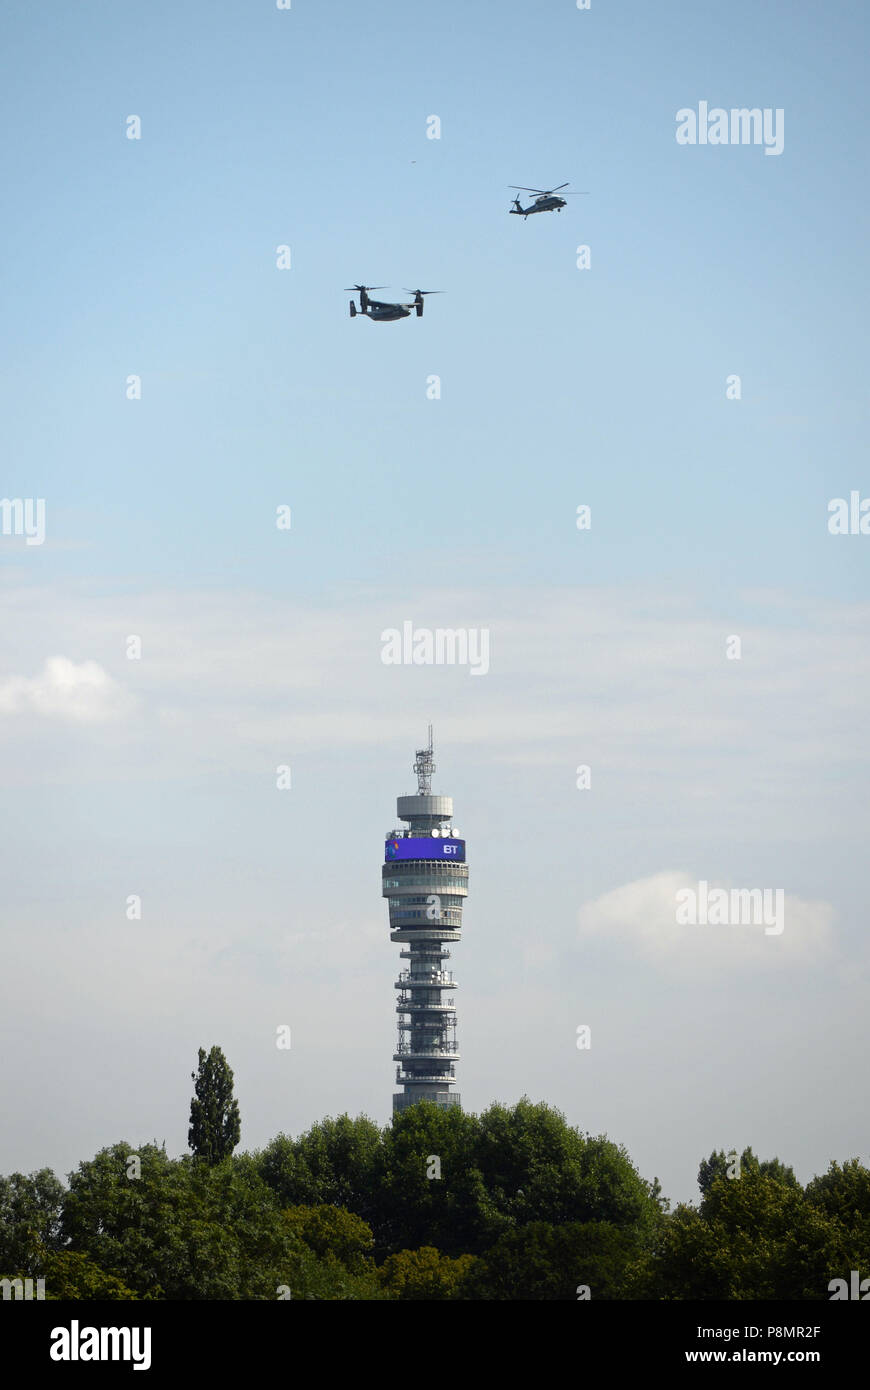 Dos US Marine Corps helicópteros vuelan por encima de la torre de telecomunicaciones en Londres como Presidente estadounidense Donald Trump viaja desde el aeropuerto de Stansted a la residencia del embajador norteamericano en Regent's Park, donde se está gastando el miércoles por la noche. Foto de stock